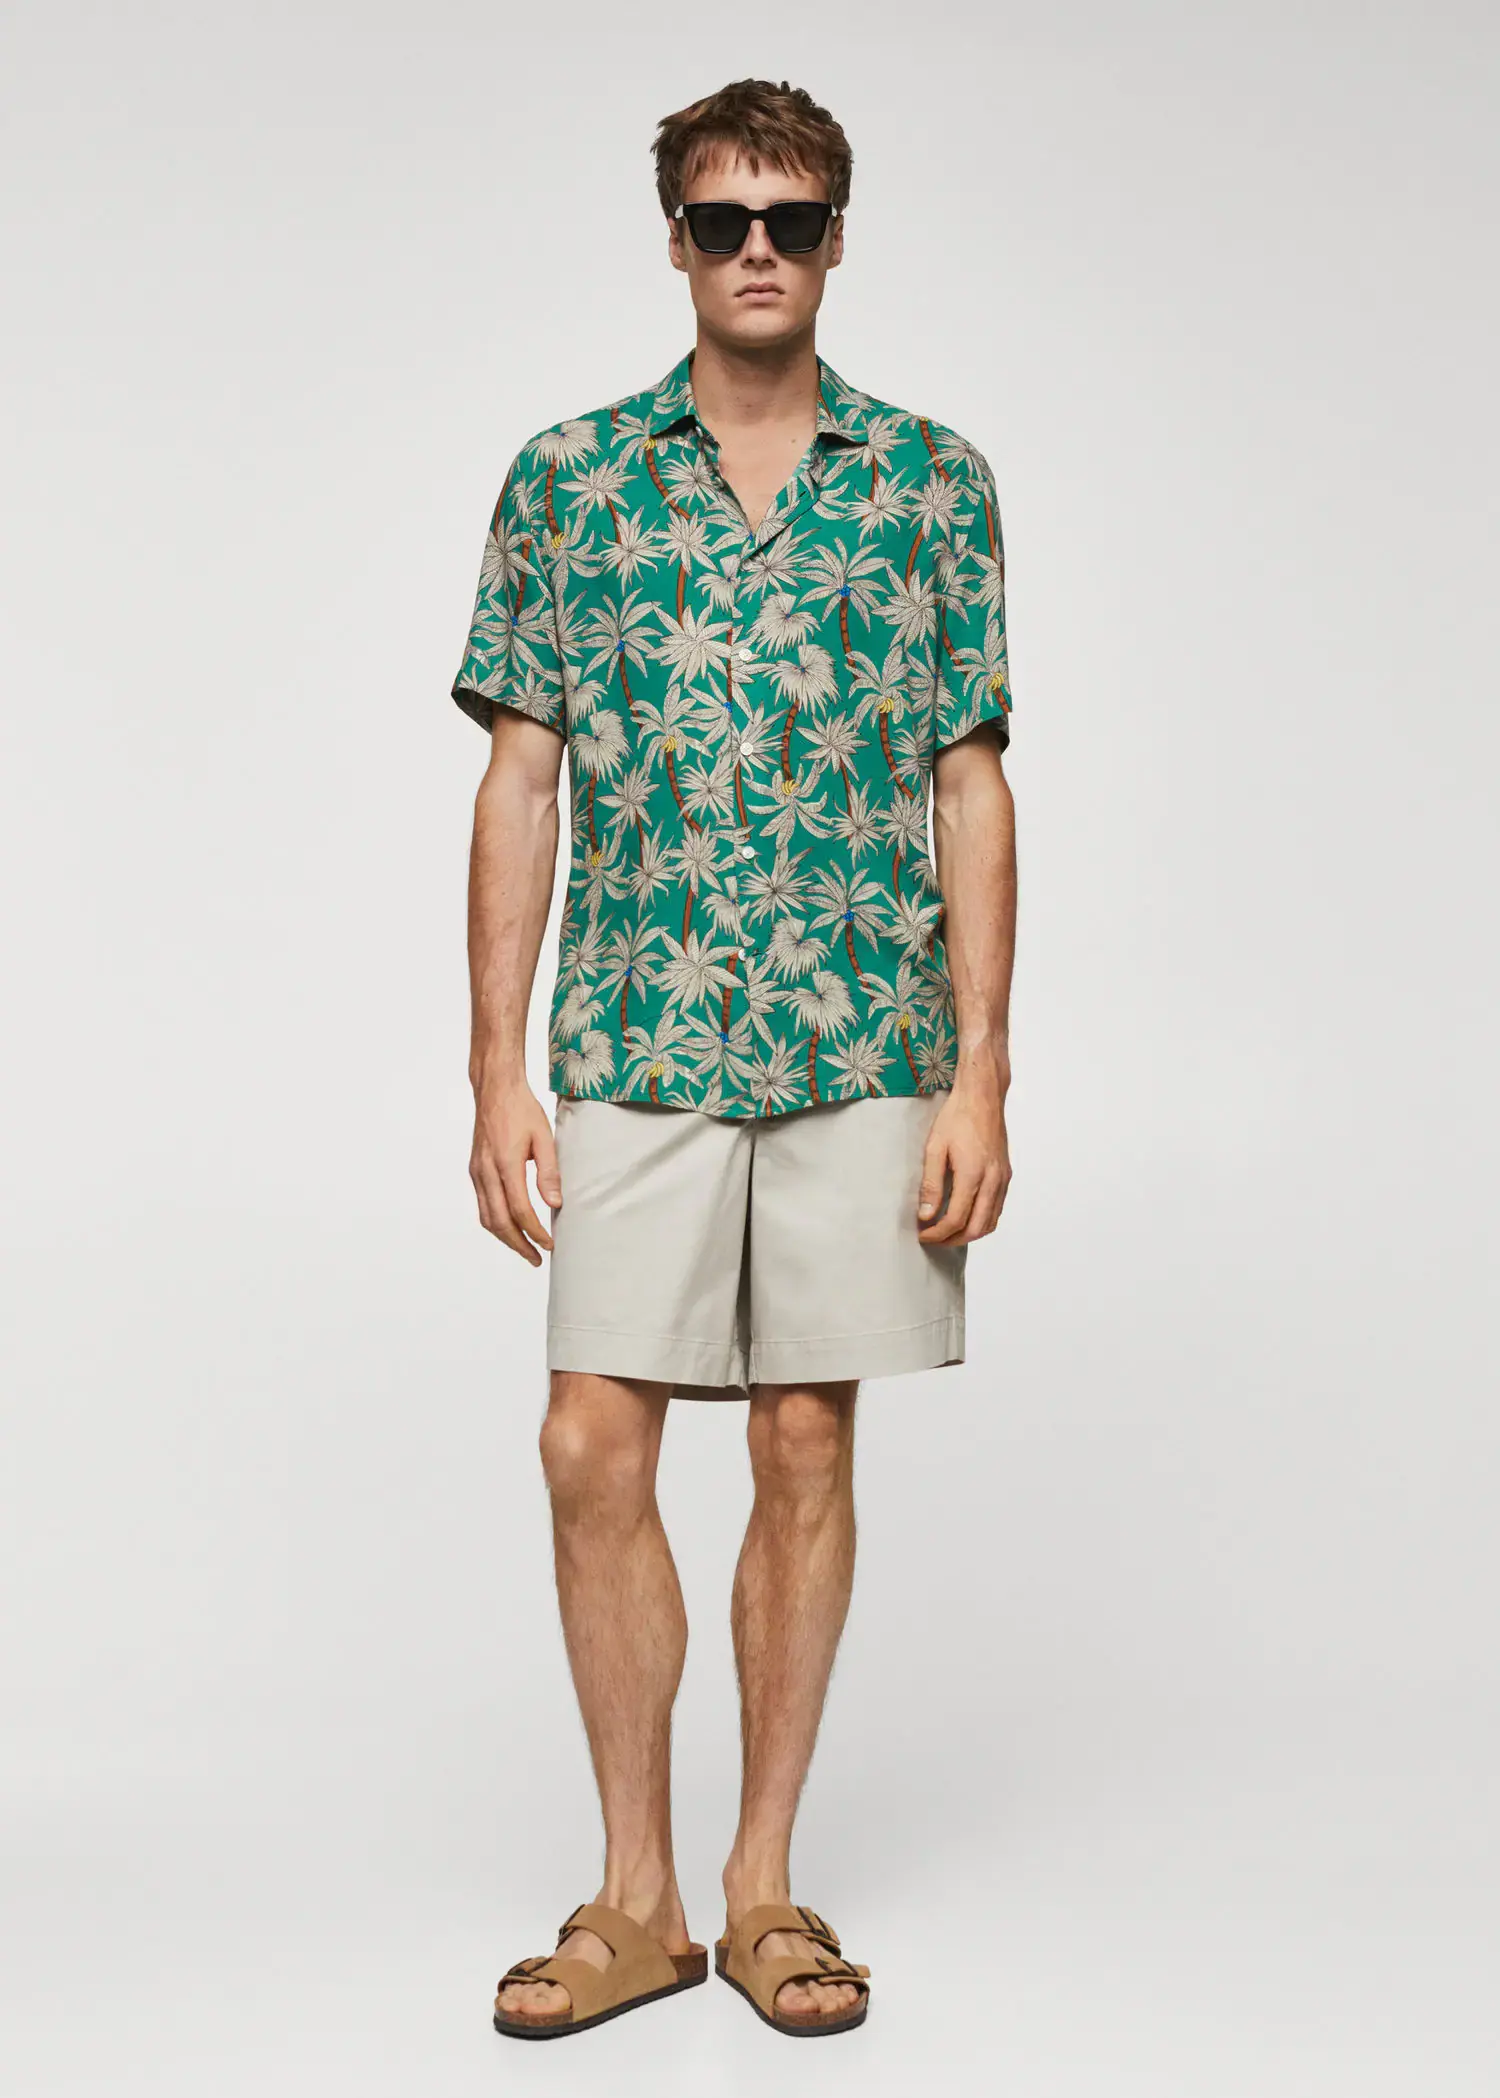 Mango Hawaiian print short sleeve shirt. 2